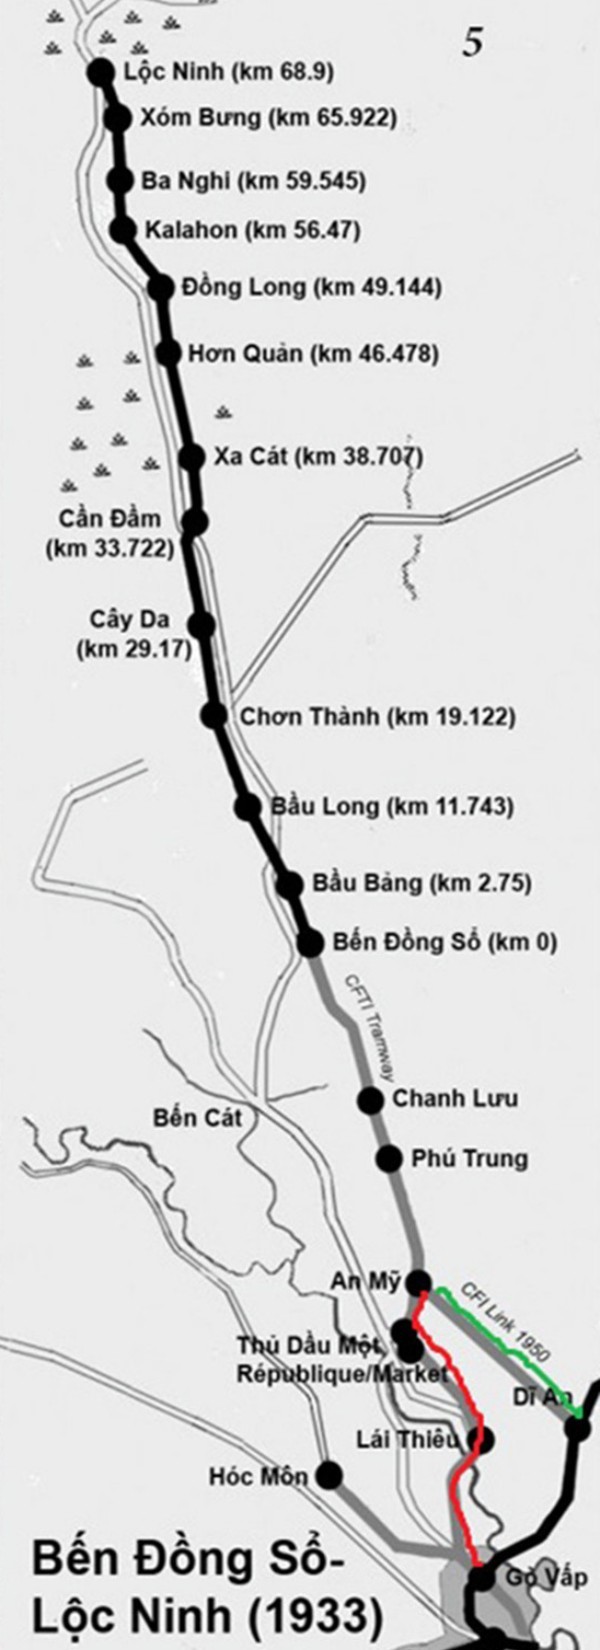 
Tuyến đường sắt Sài Gòn - Lộc Ninh
